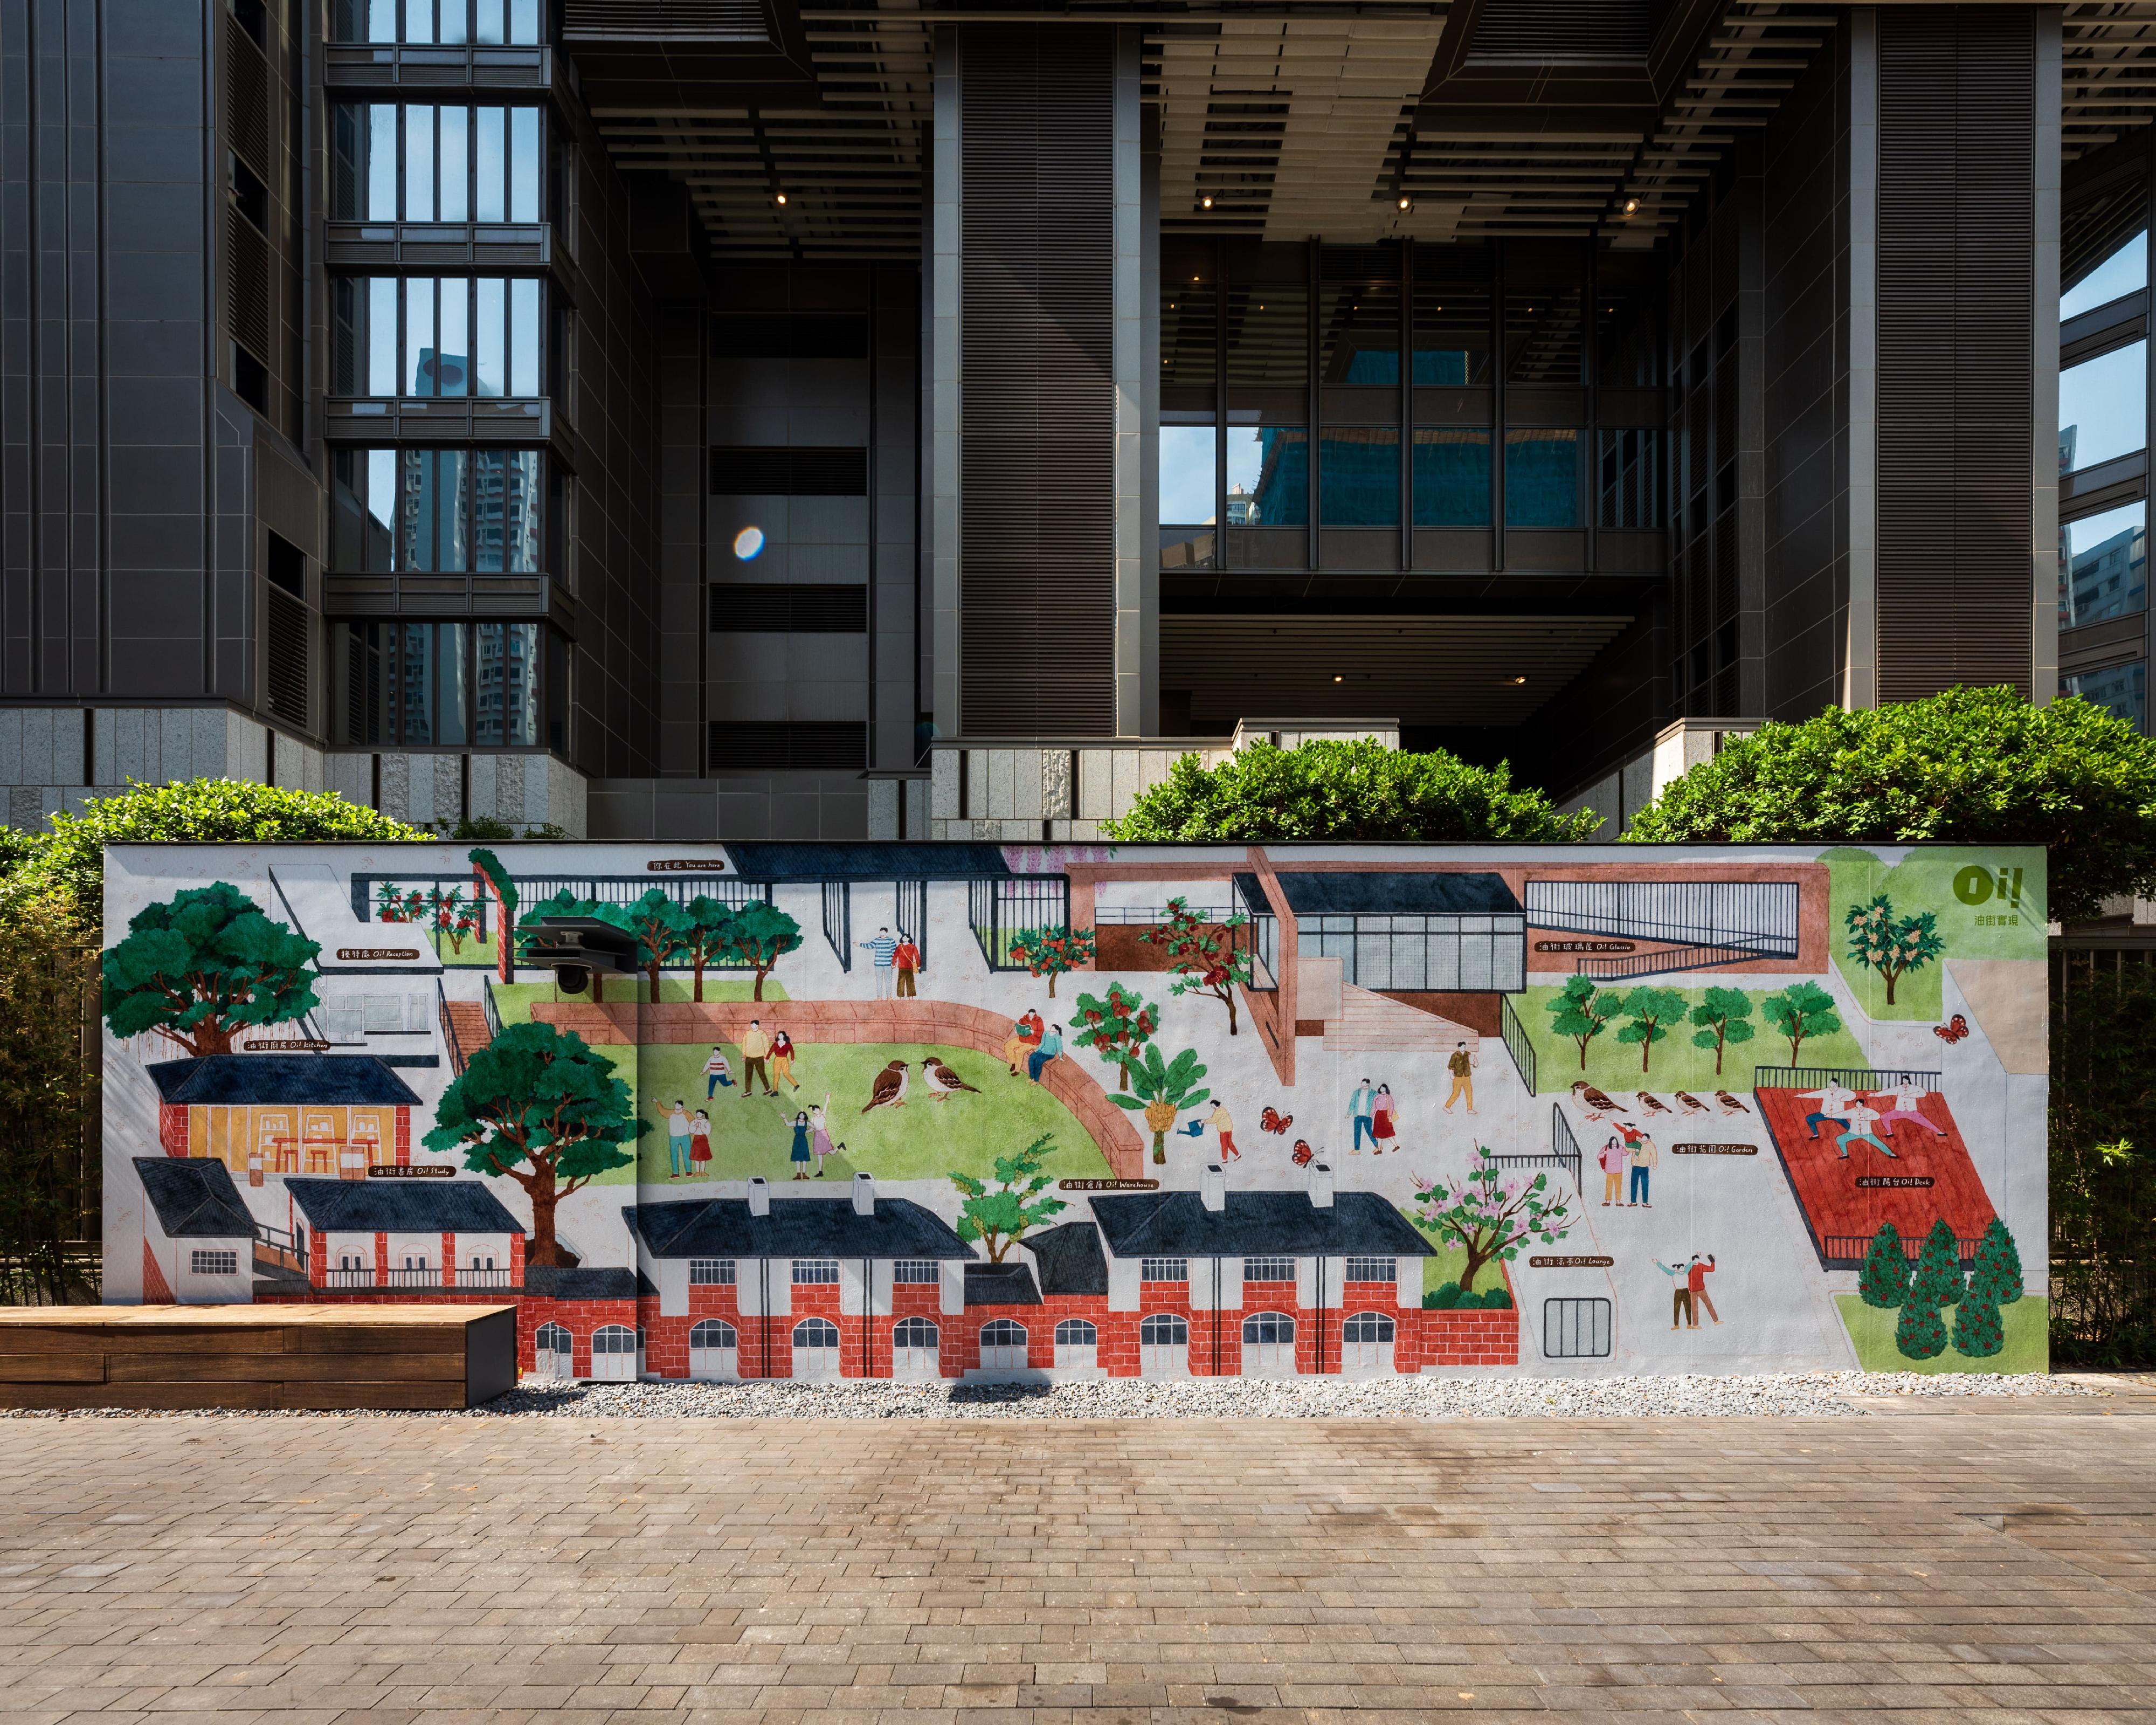 油街實現的全新藝術空間明日（五月二十四日）起向公眾開放。圖示藝術家吳嘉敏的戶外壁畫地圖《綠野油蹤》展示於油街實現戶外空間。